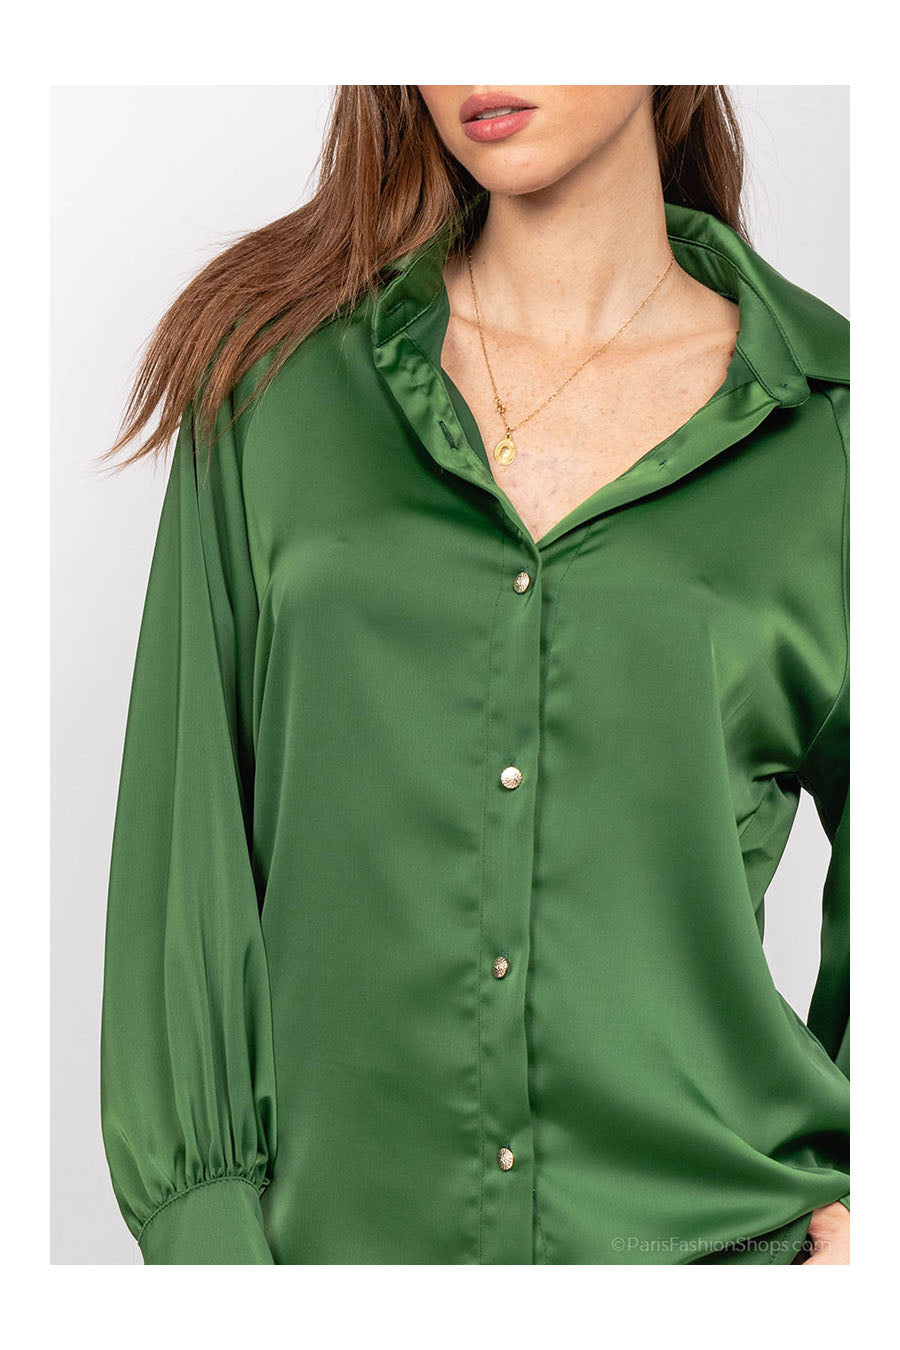 Γυναικείο πουκάμισο Kailah, Πράσινο 4